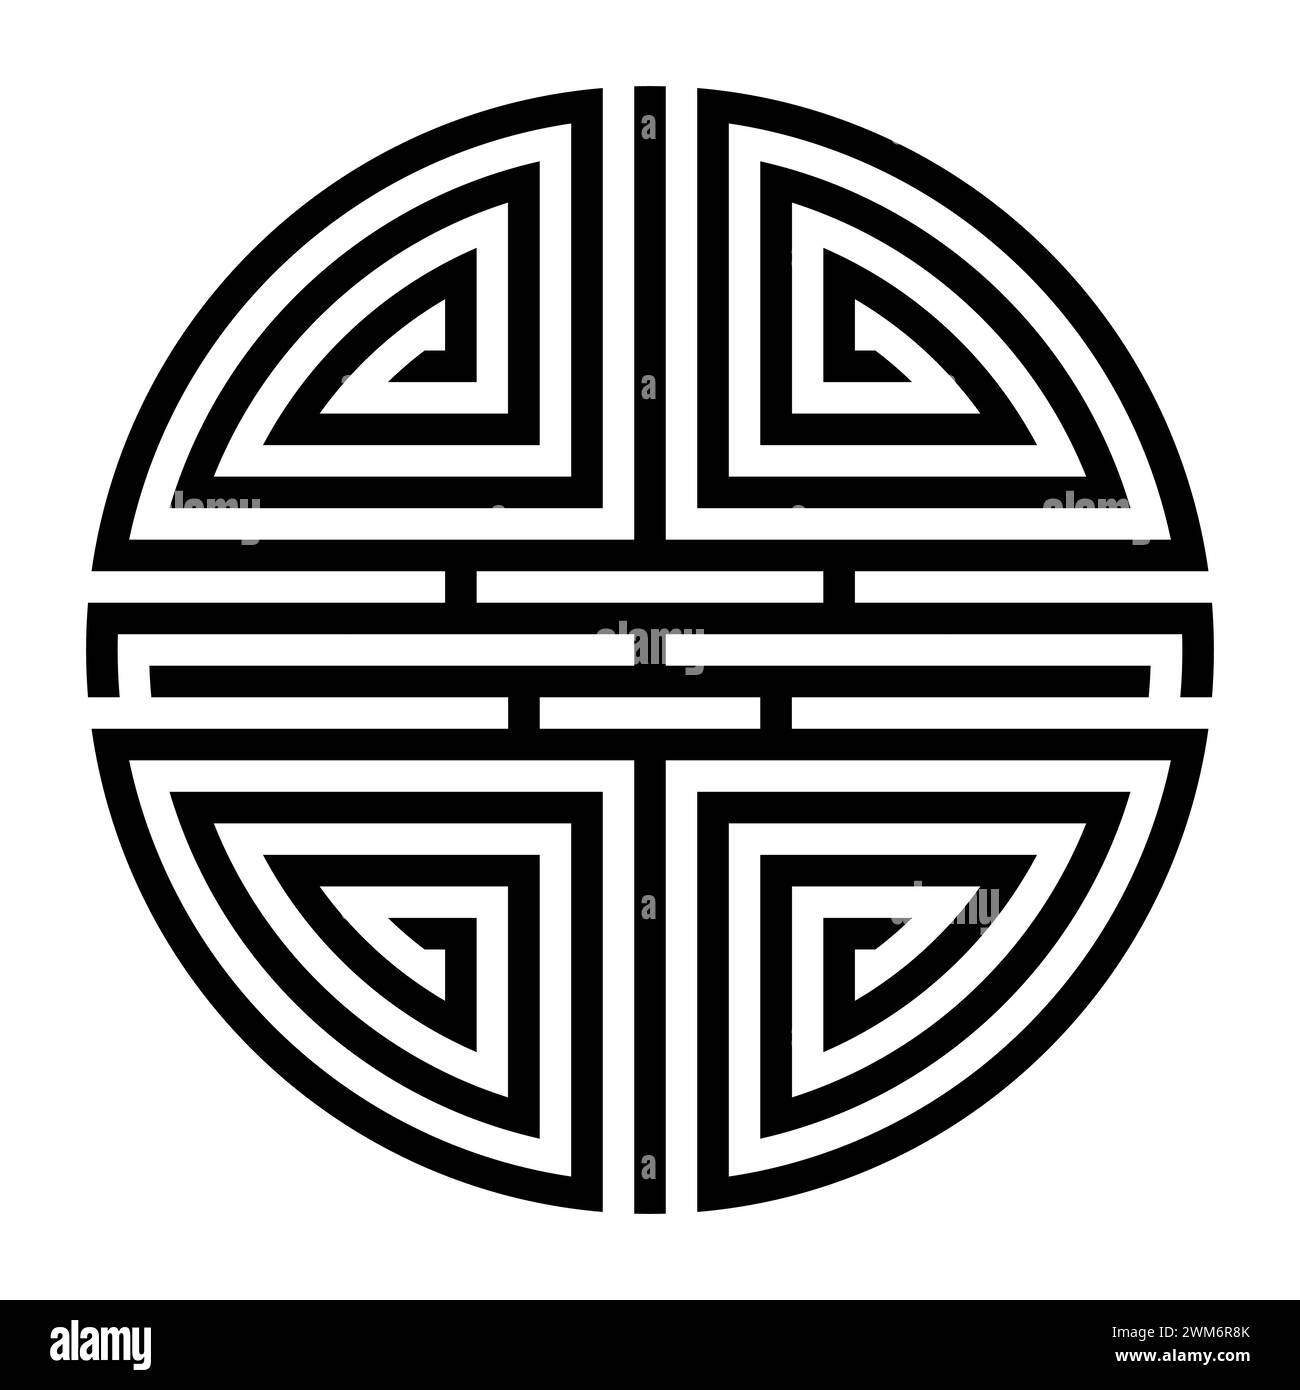 Shou, variazione del simbolo cinese per la longevità. Una lunga vita è una benedizione nel pensiero tradizionale cinese, simboleggiata da Shou Xing. Foto Stock